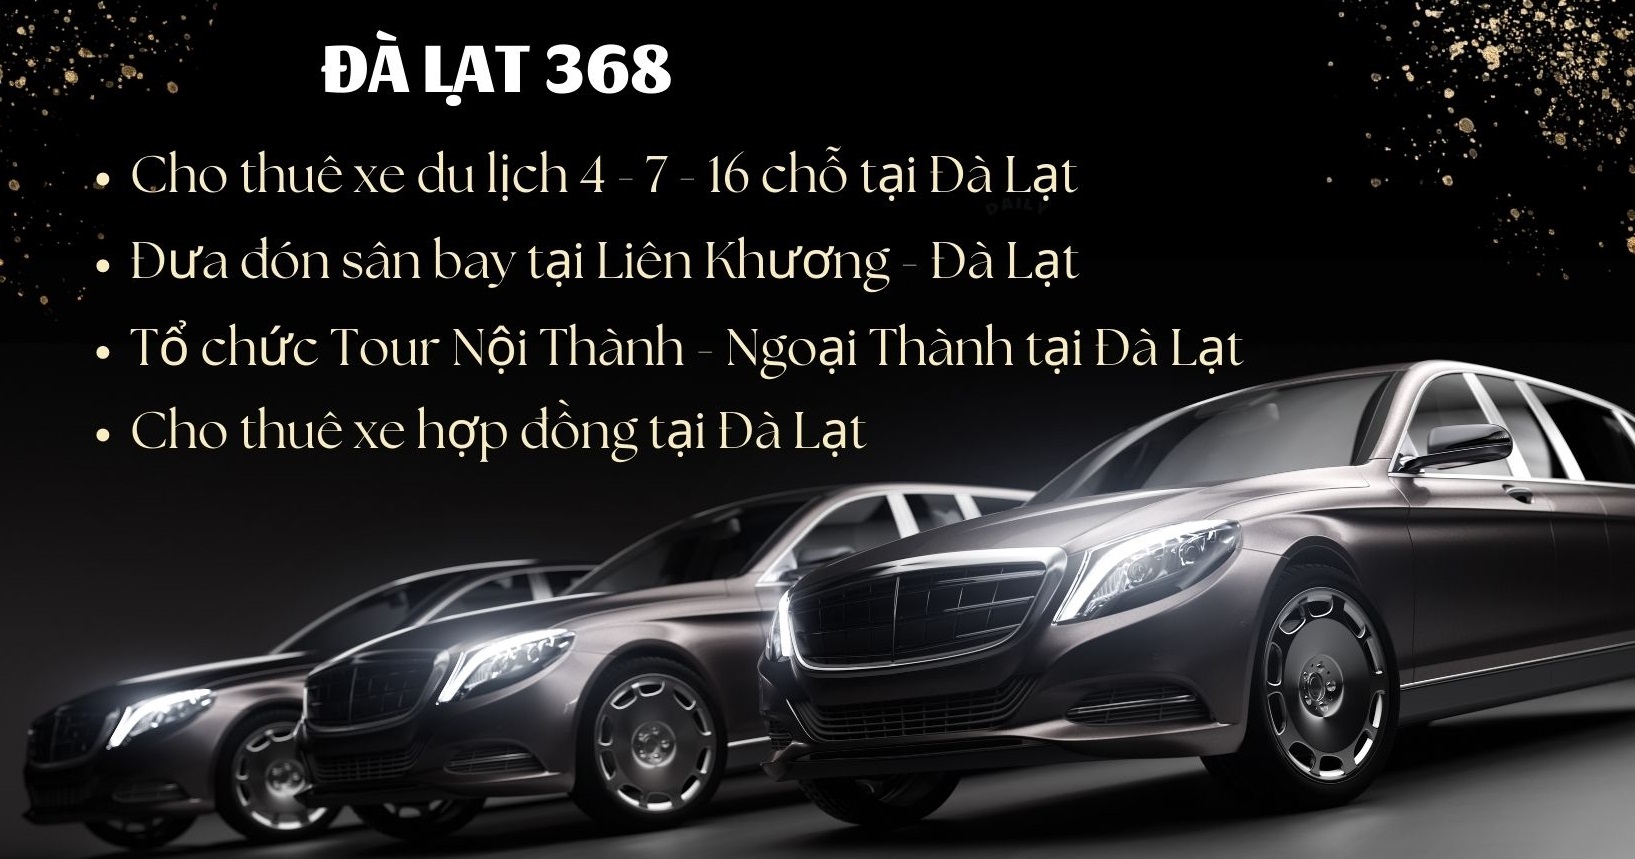 dalat368-chothuexe